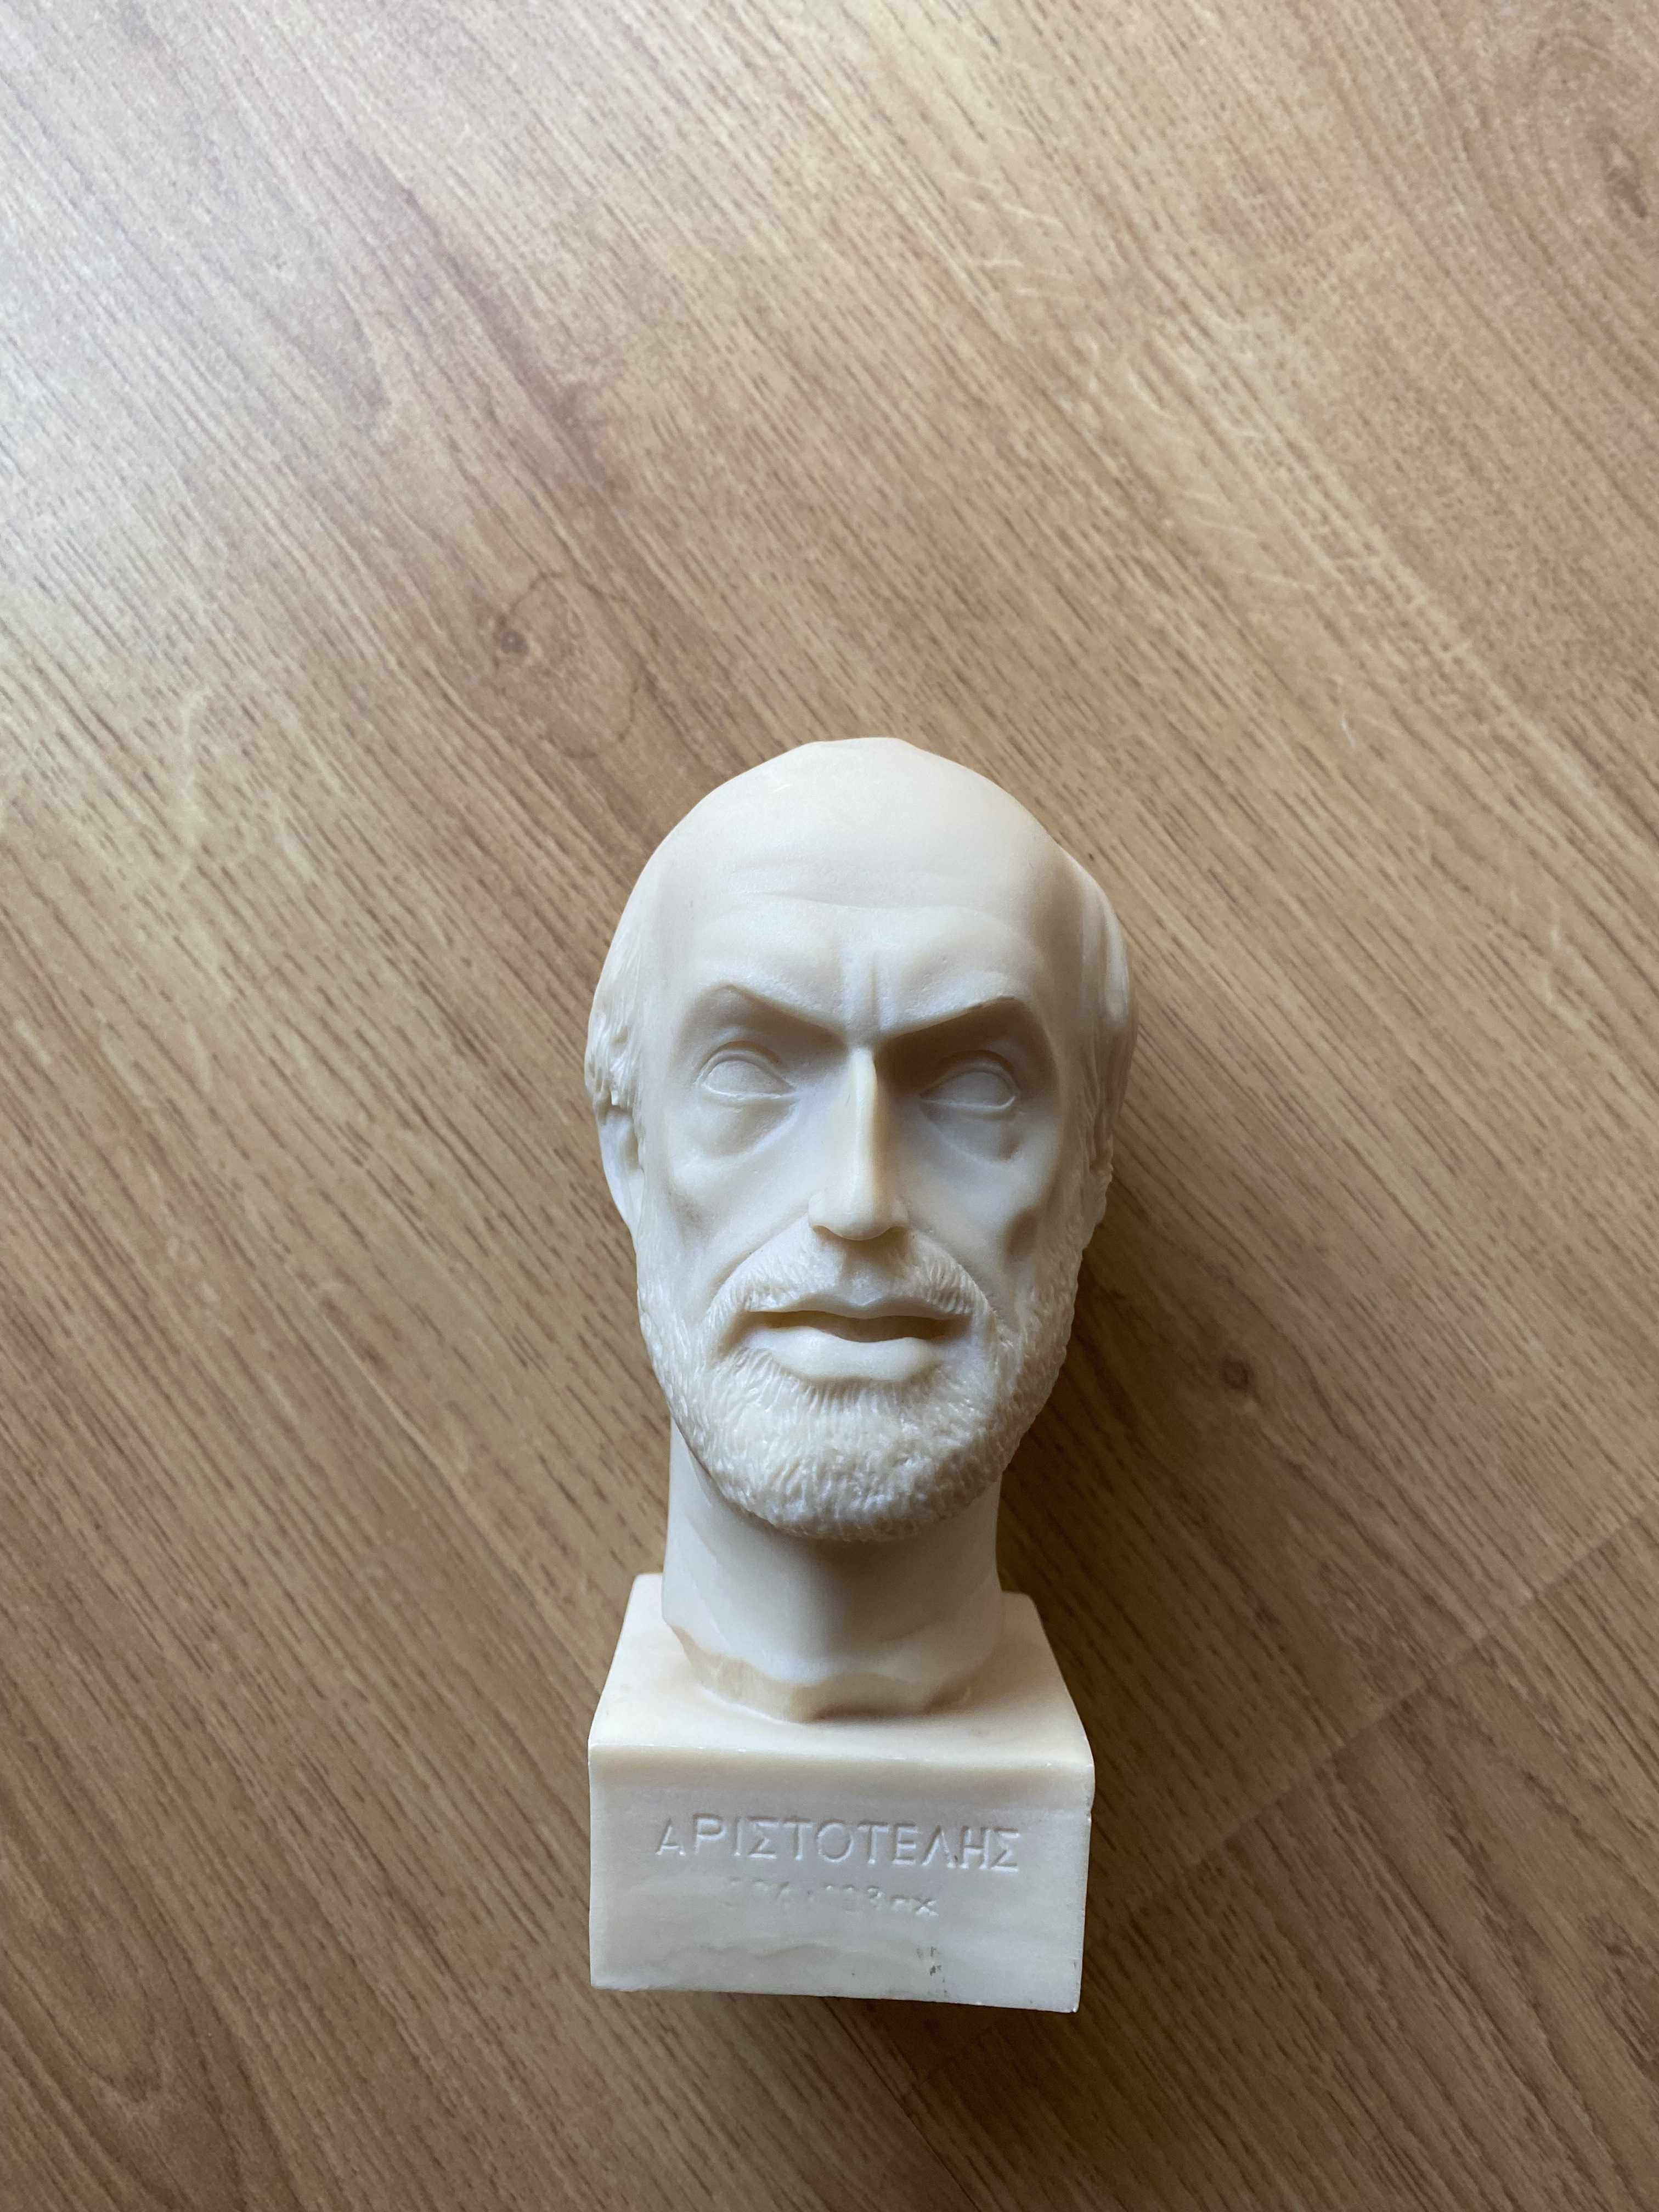 Alabastrowe popiersia filozofów: Arystoteles, Demokryt, Sokrates